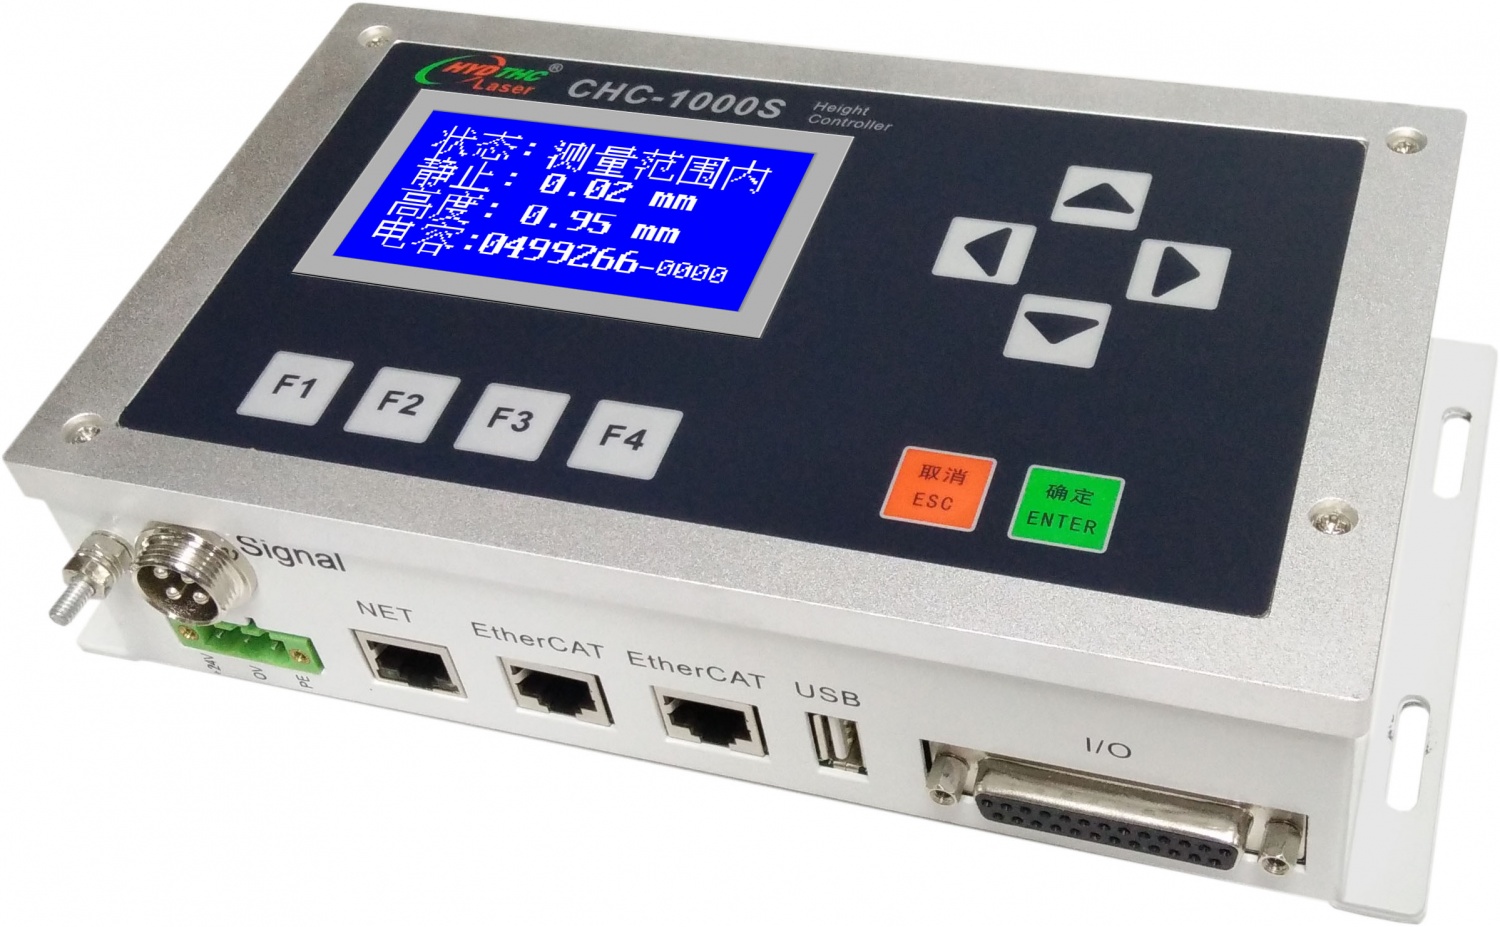 激光切割随动传感器/控制器CHC-1000S，兼容EG8030